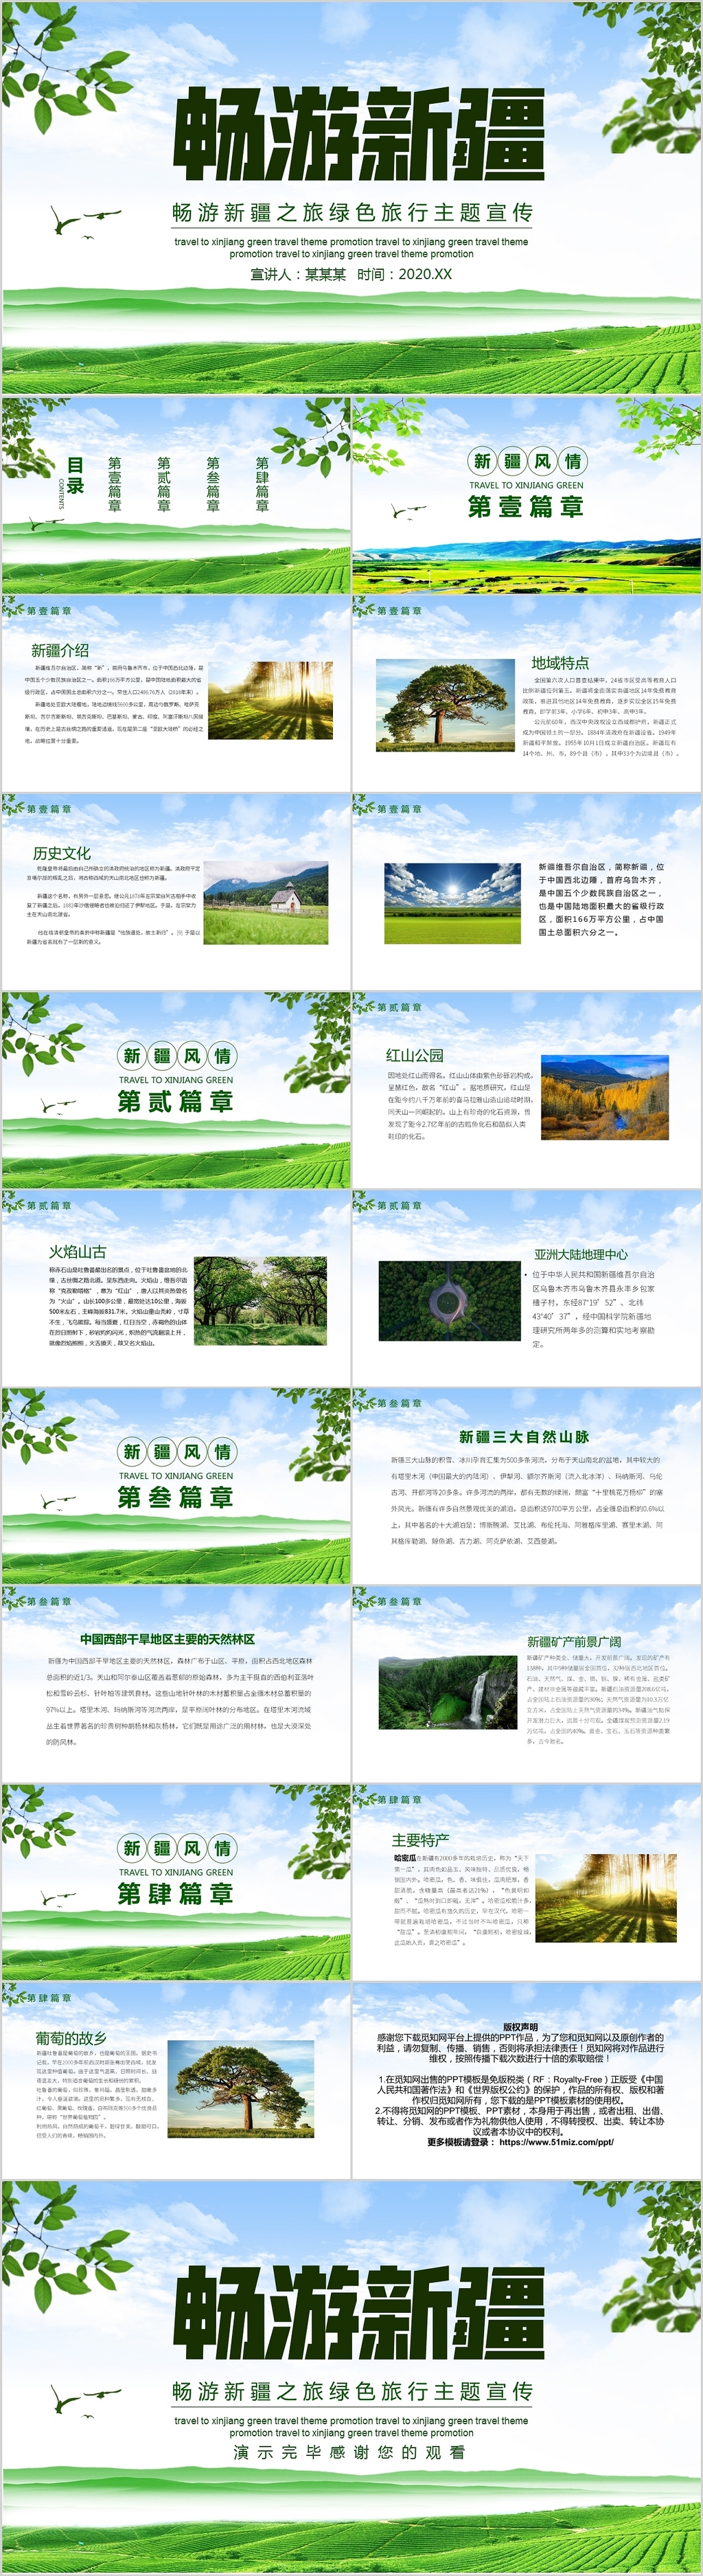 绿色清新畅游新疆之旅旅行主题宣传动态PPT模板新疆旅游